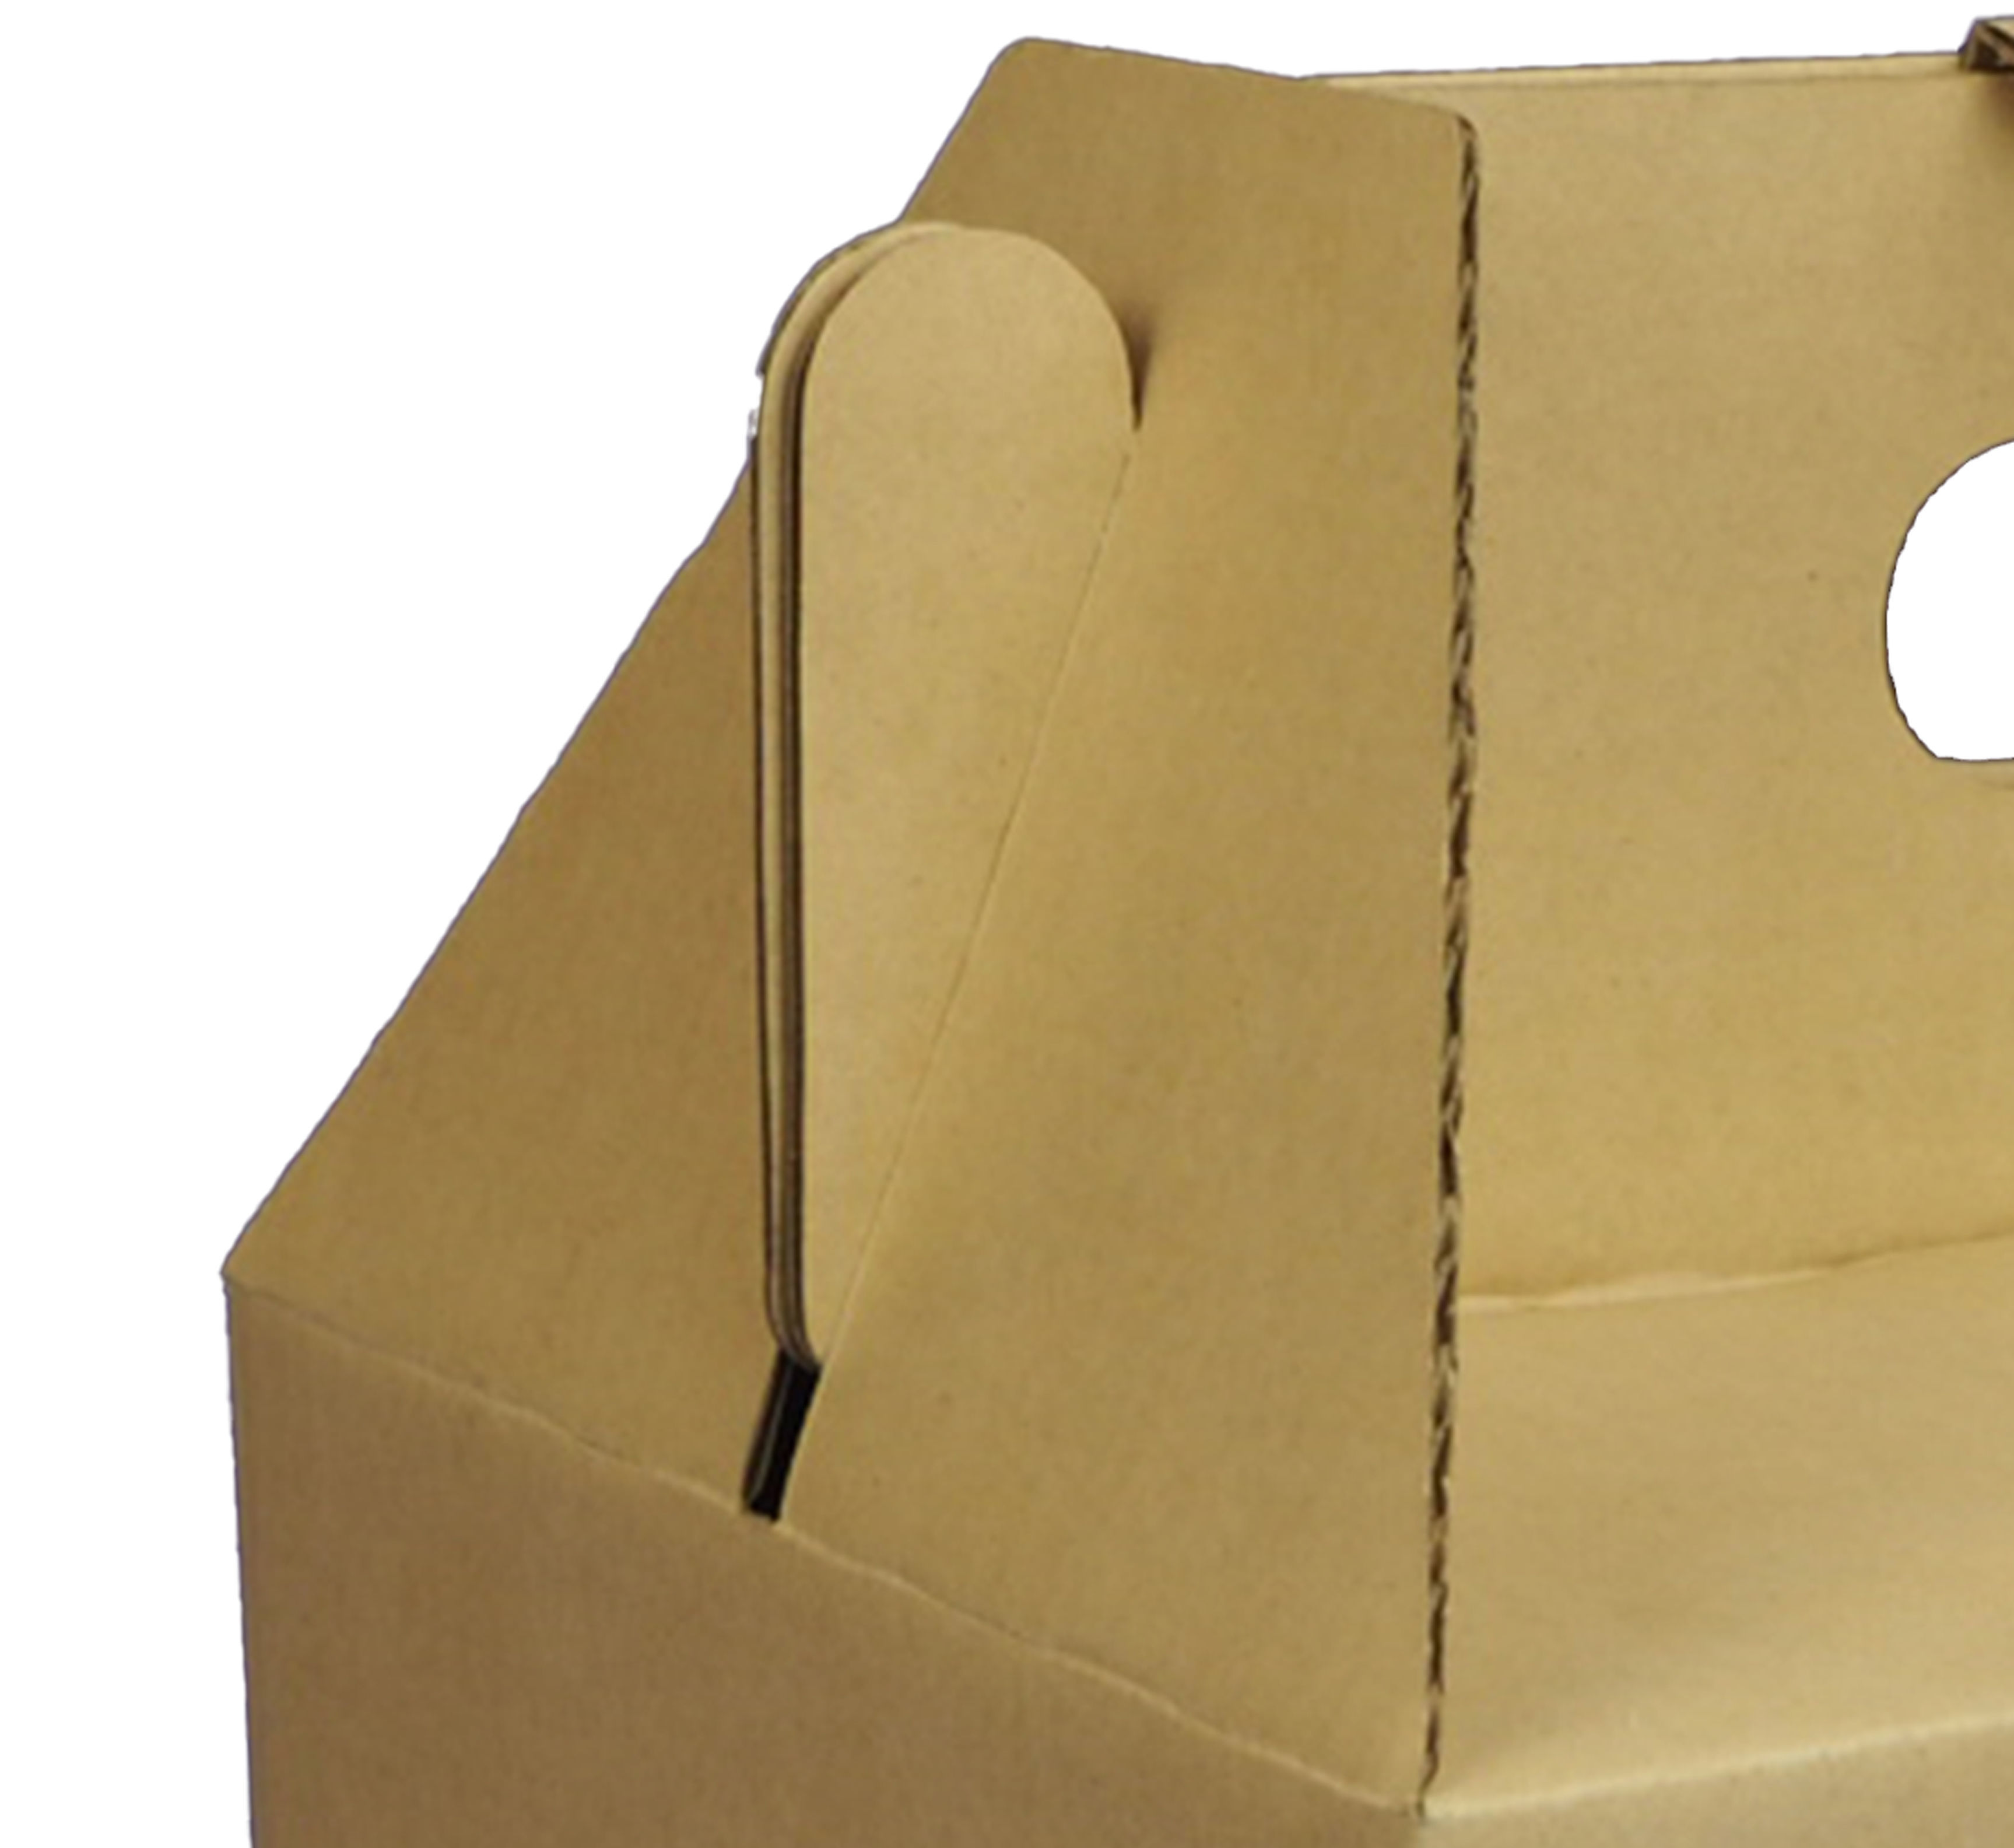 ความหนา 3 ชั้น ลอน B (กล่องแบบ ความหนากล่องจะขึ้นอยู่กับน้ำหนักที่บรรจุในกล่อง